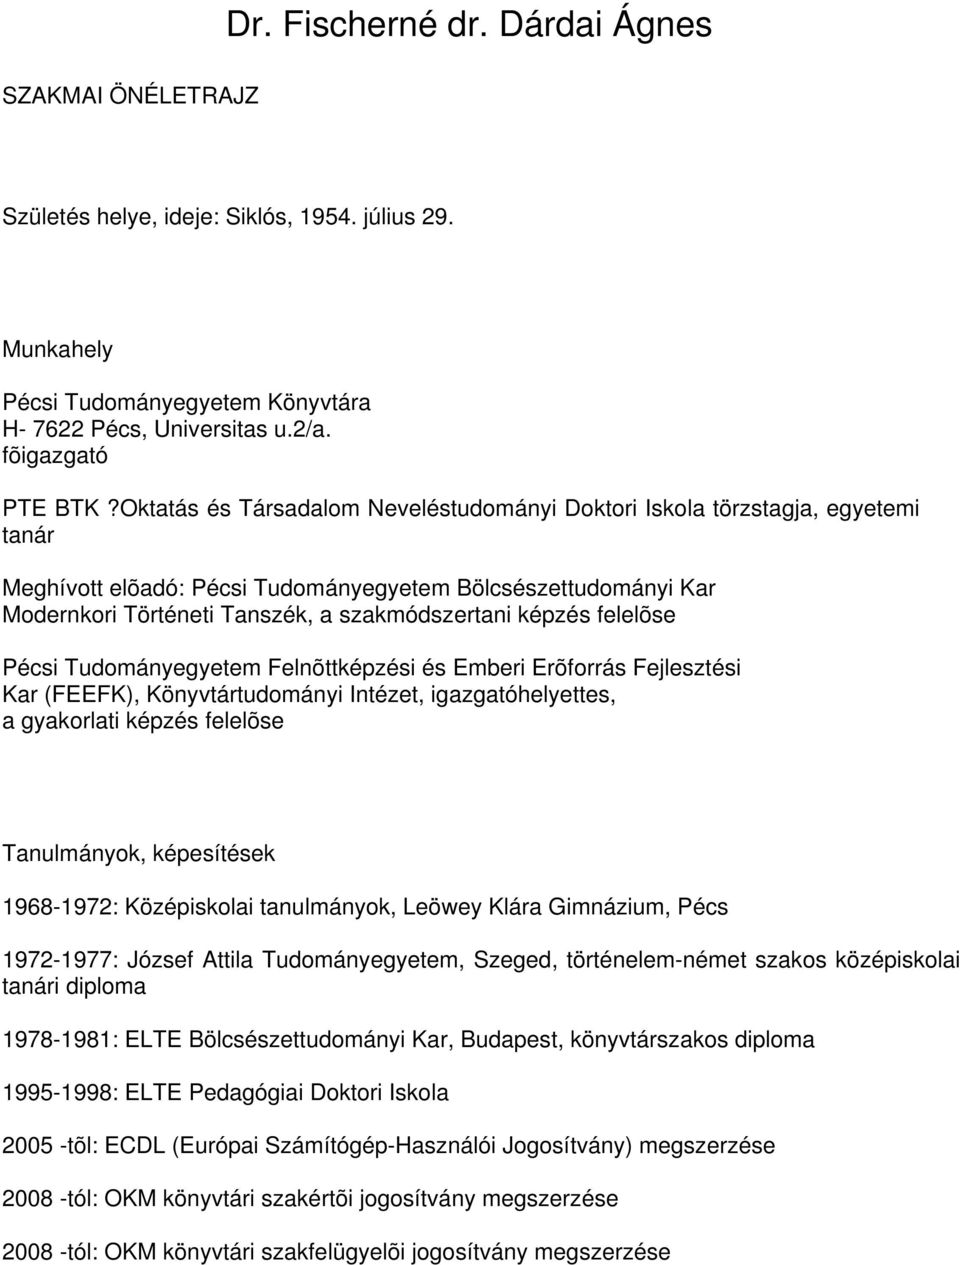 Dr. Fischerné dr. Dárdai Ágnes - PDF Free Download